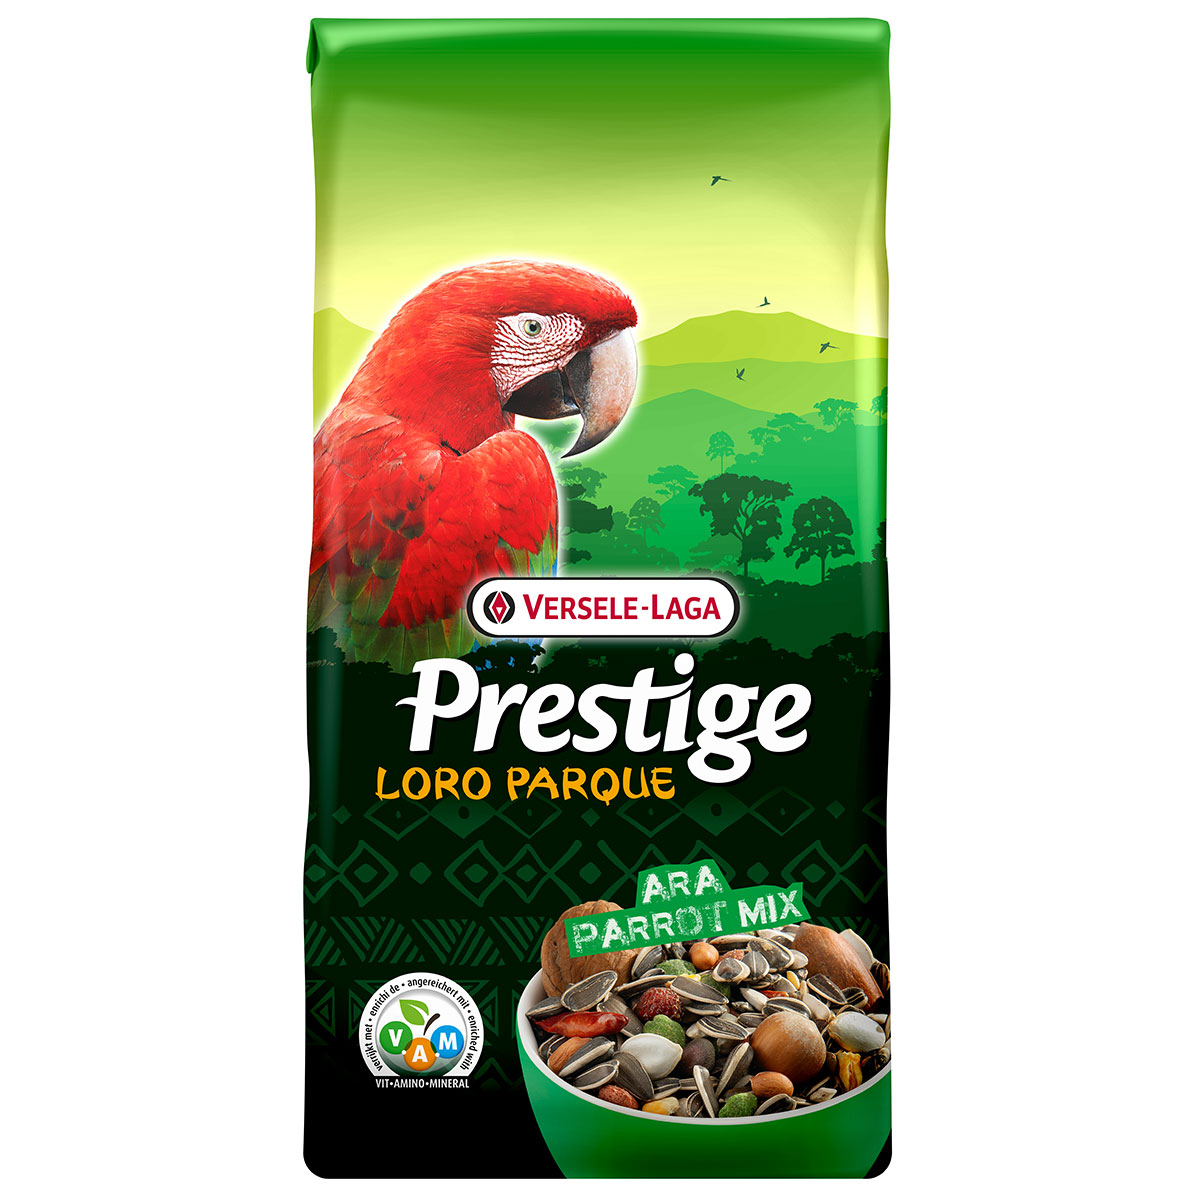 Versele Laga Prestige Loro Parque Ara Parrot Mix 15kg von Versele Laga